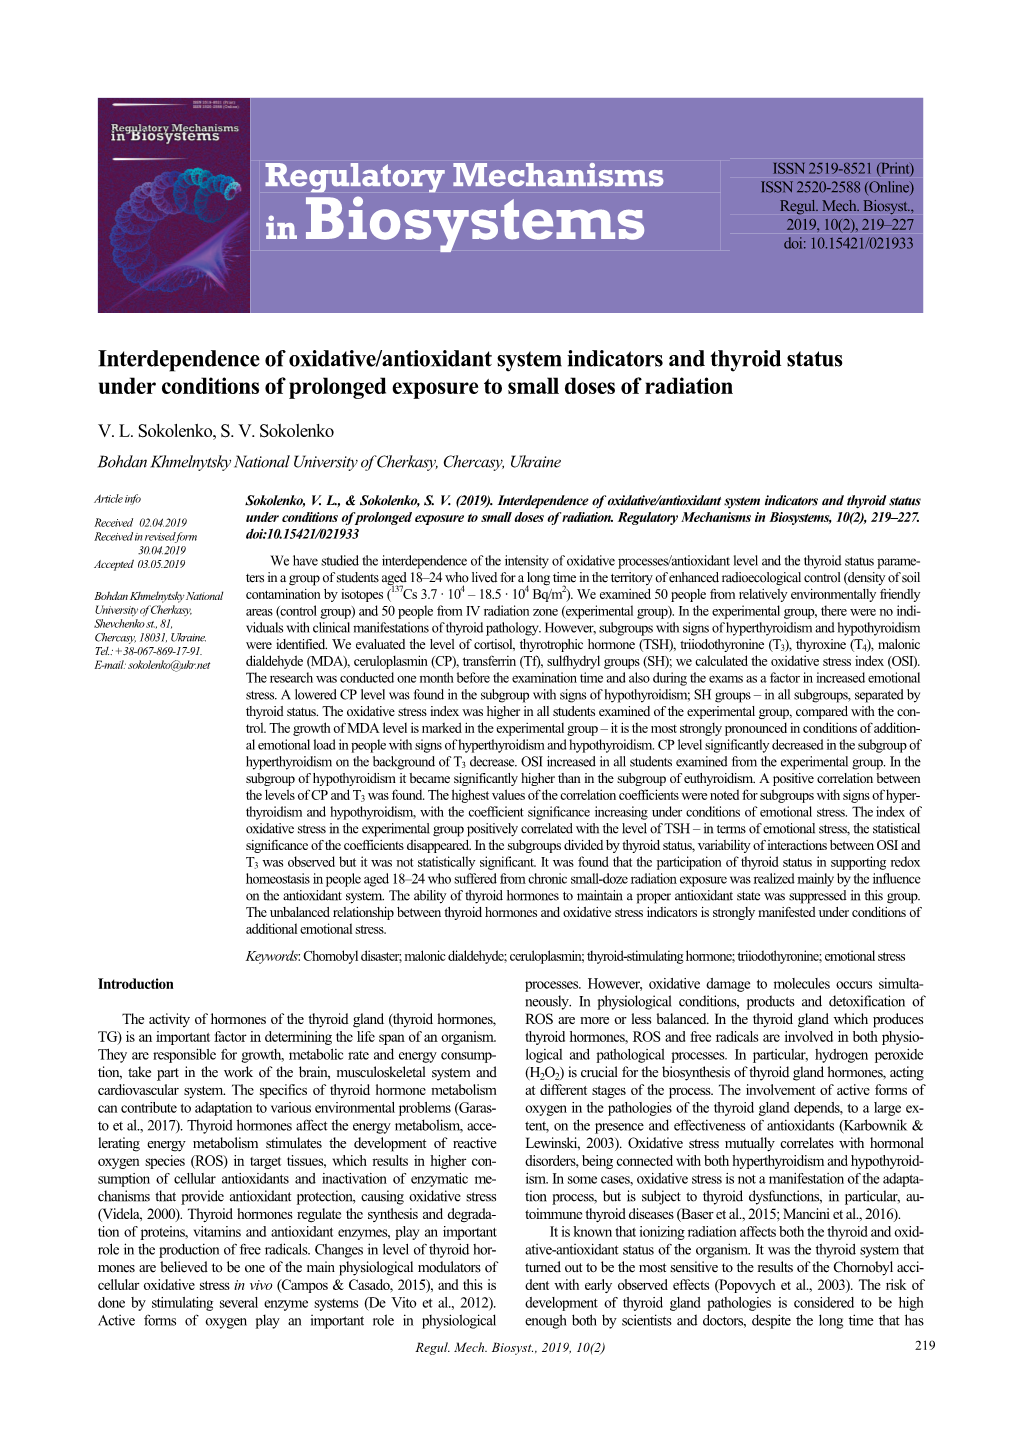 In Biosystems Doi: 10.15421/021933